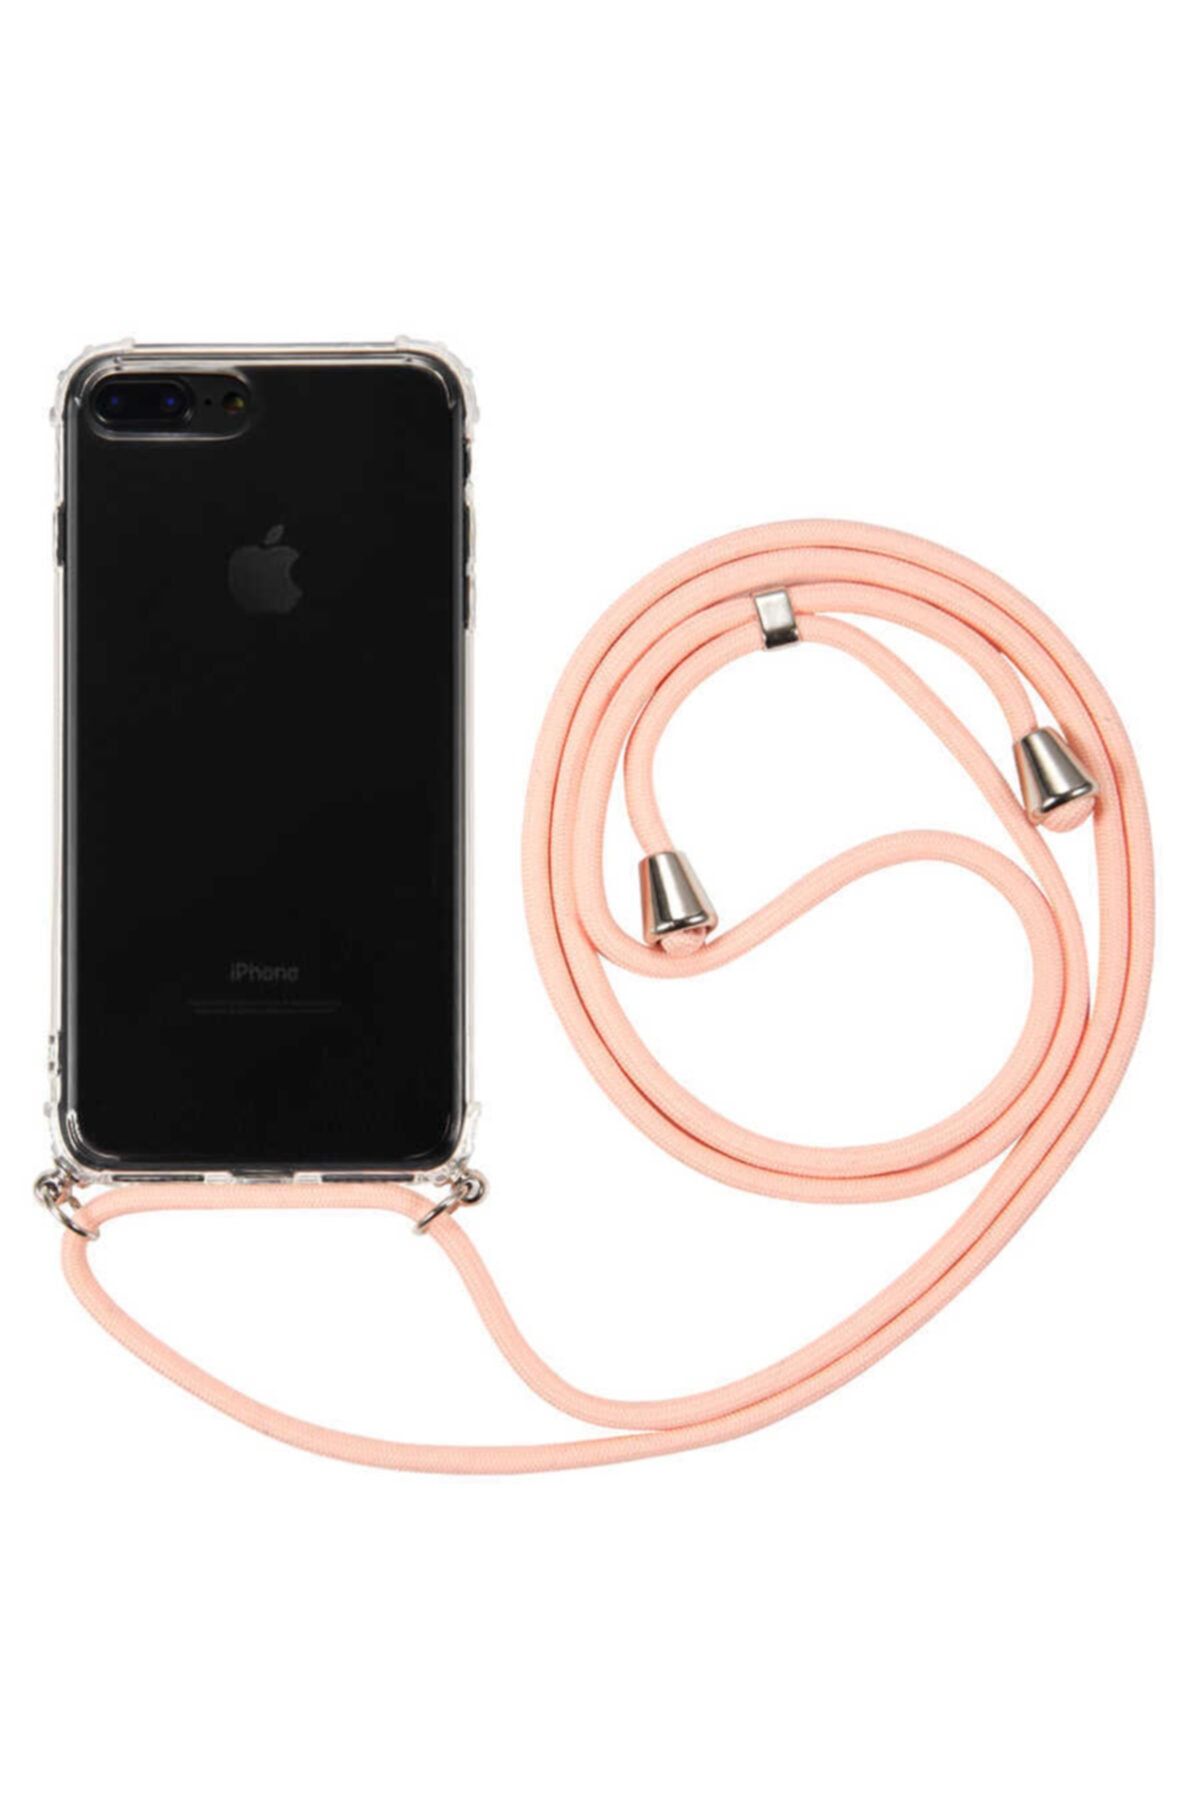 Fibaks Apple Iphone 8 Plus Kılıf Ipli Boyun Askılı Köşe Korumalı Şeffaf Kapak